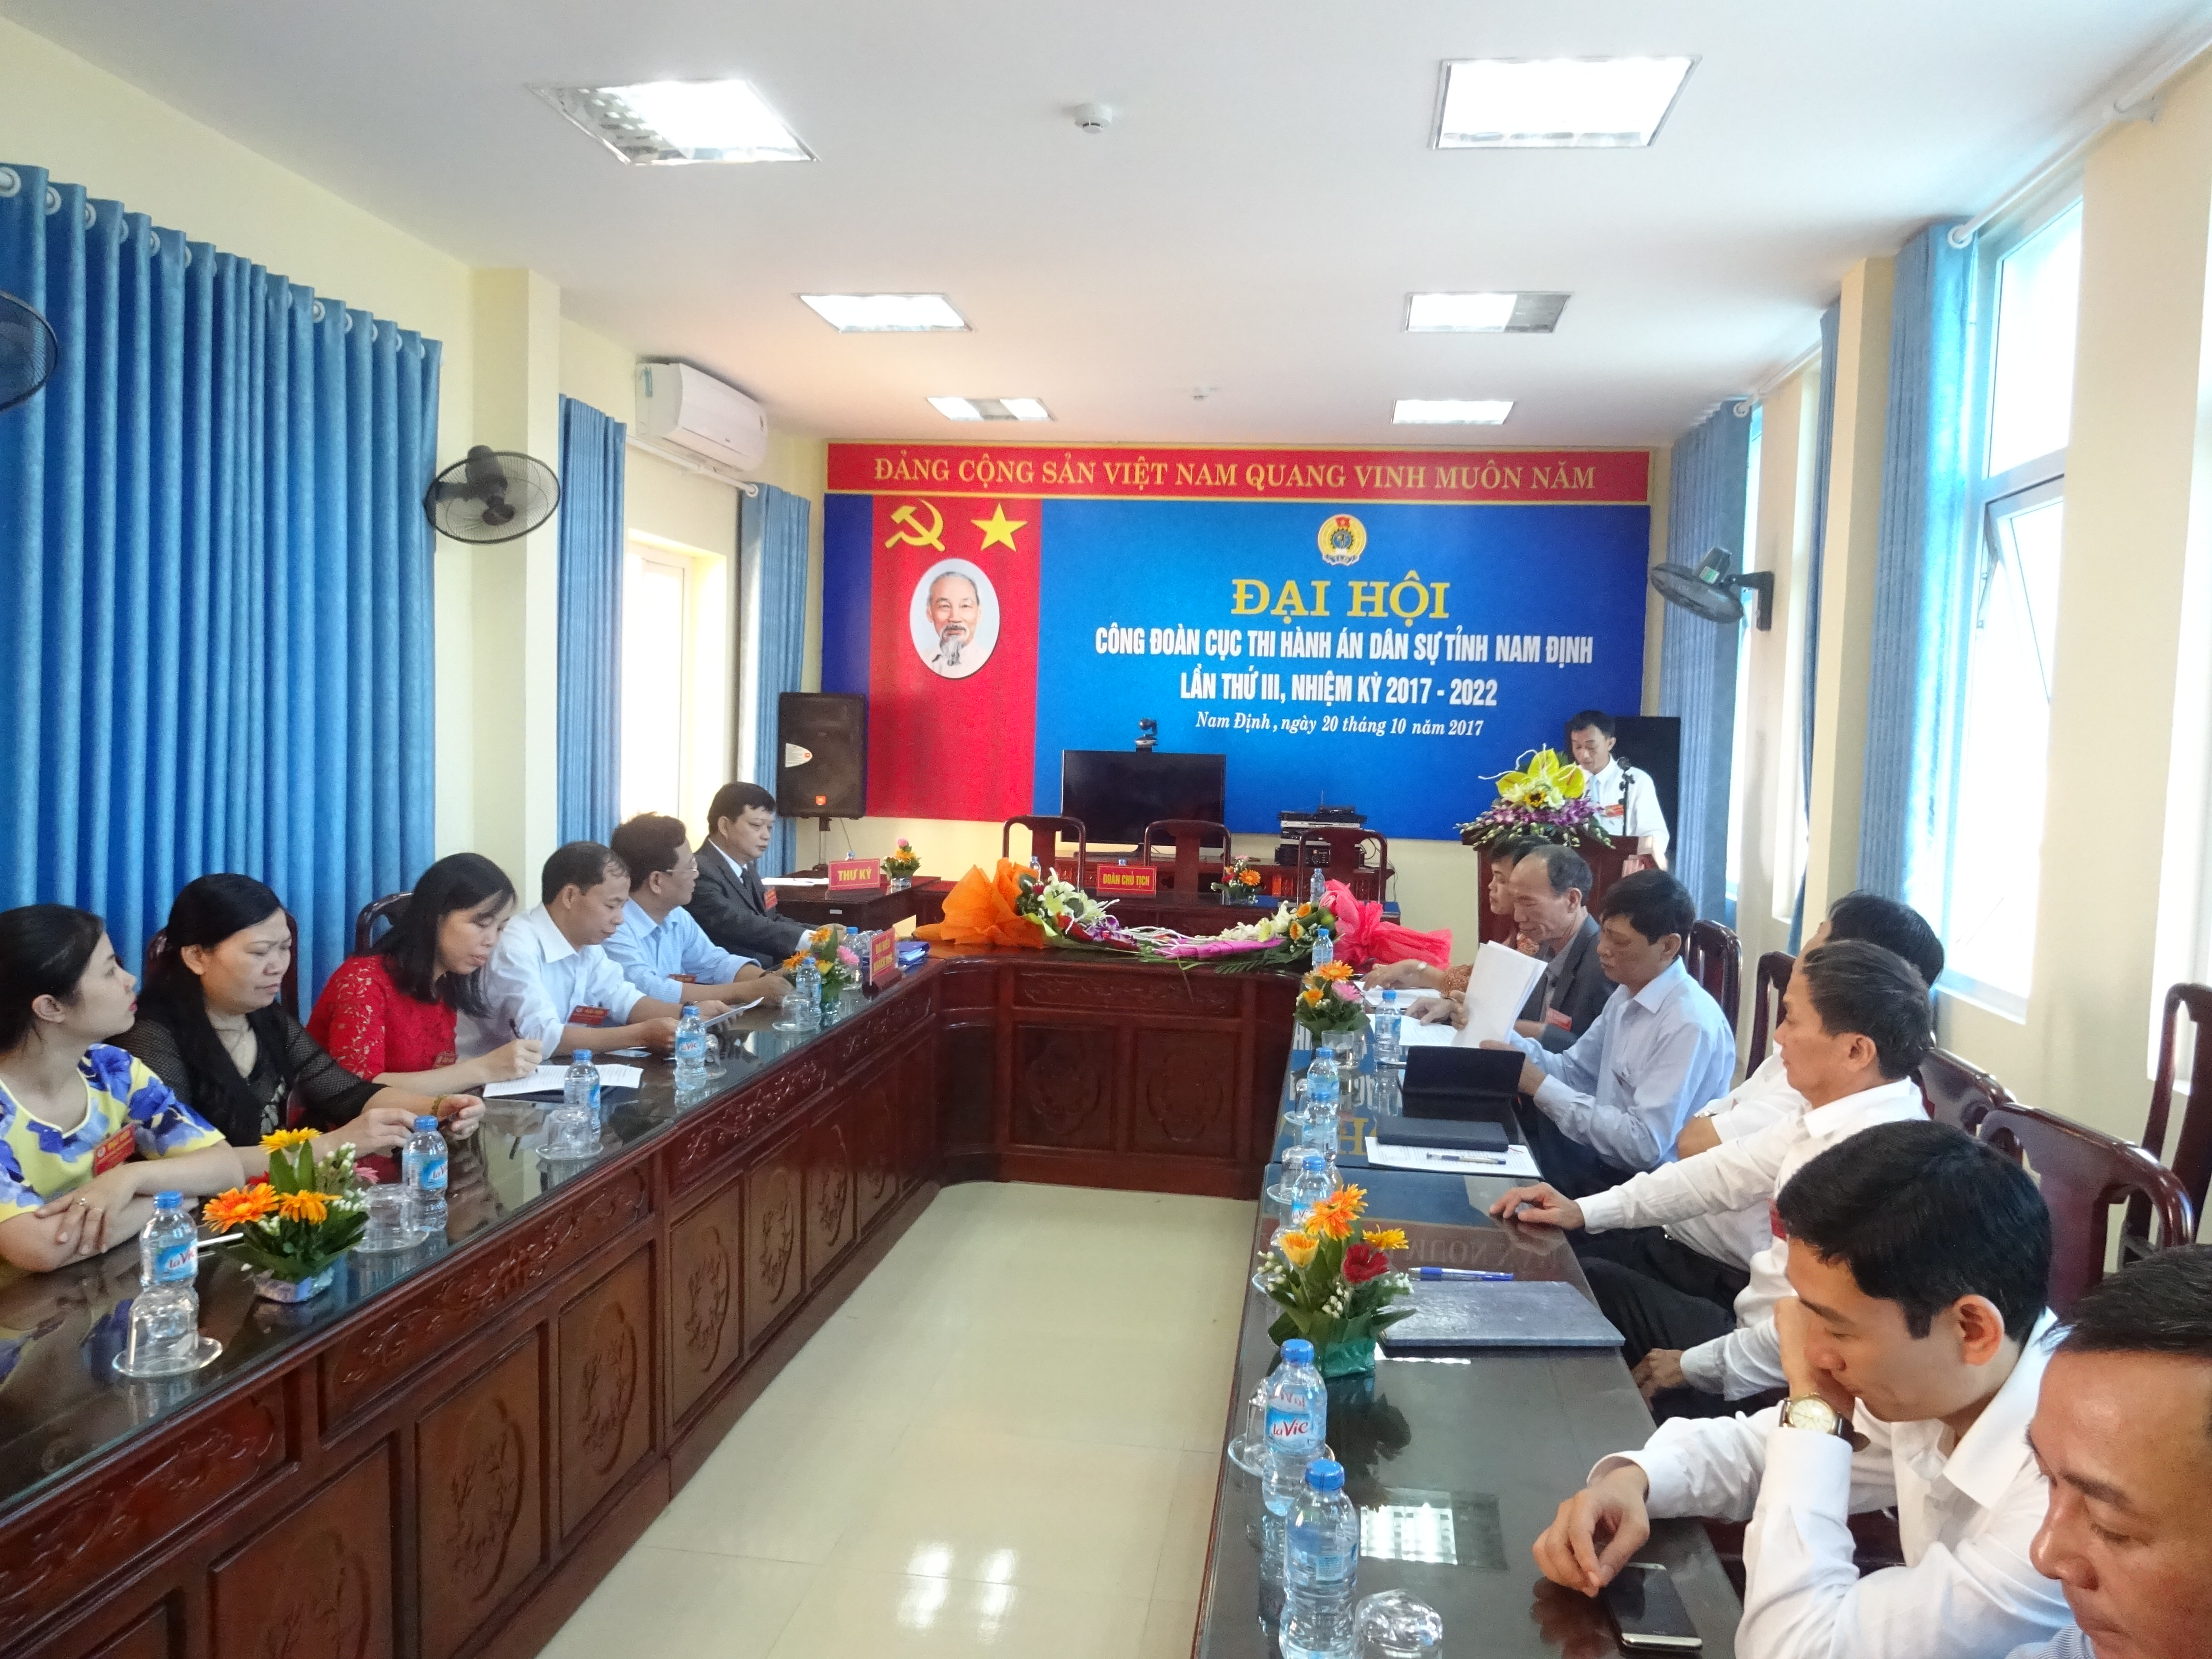 Đại hội Công đoàn cơ sở Cục Thi hành án dân sự tỉnh Nam Định lần thứ III, nhiệm kỳ 2017- 2022